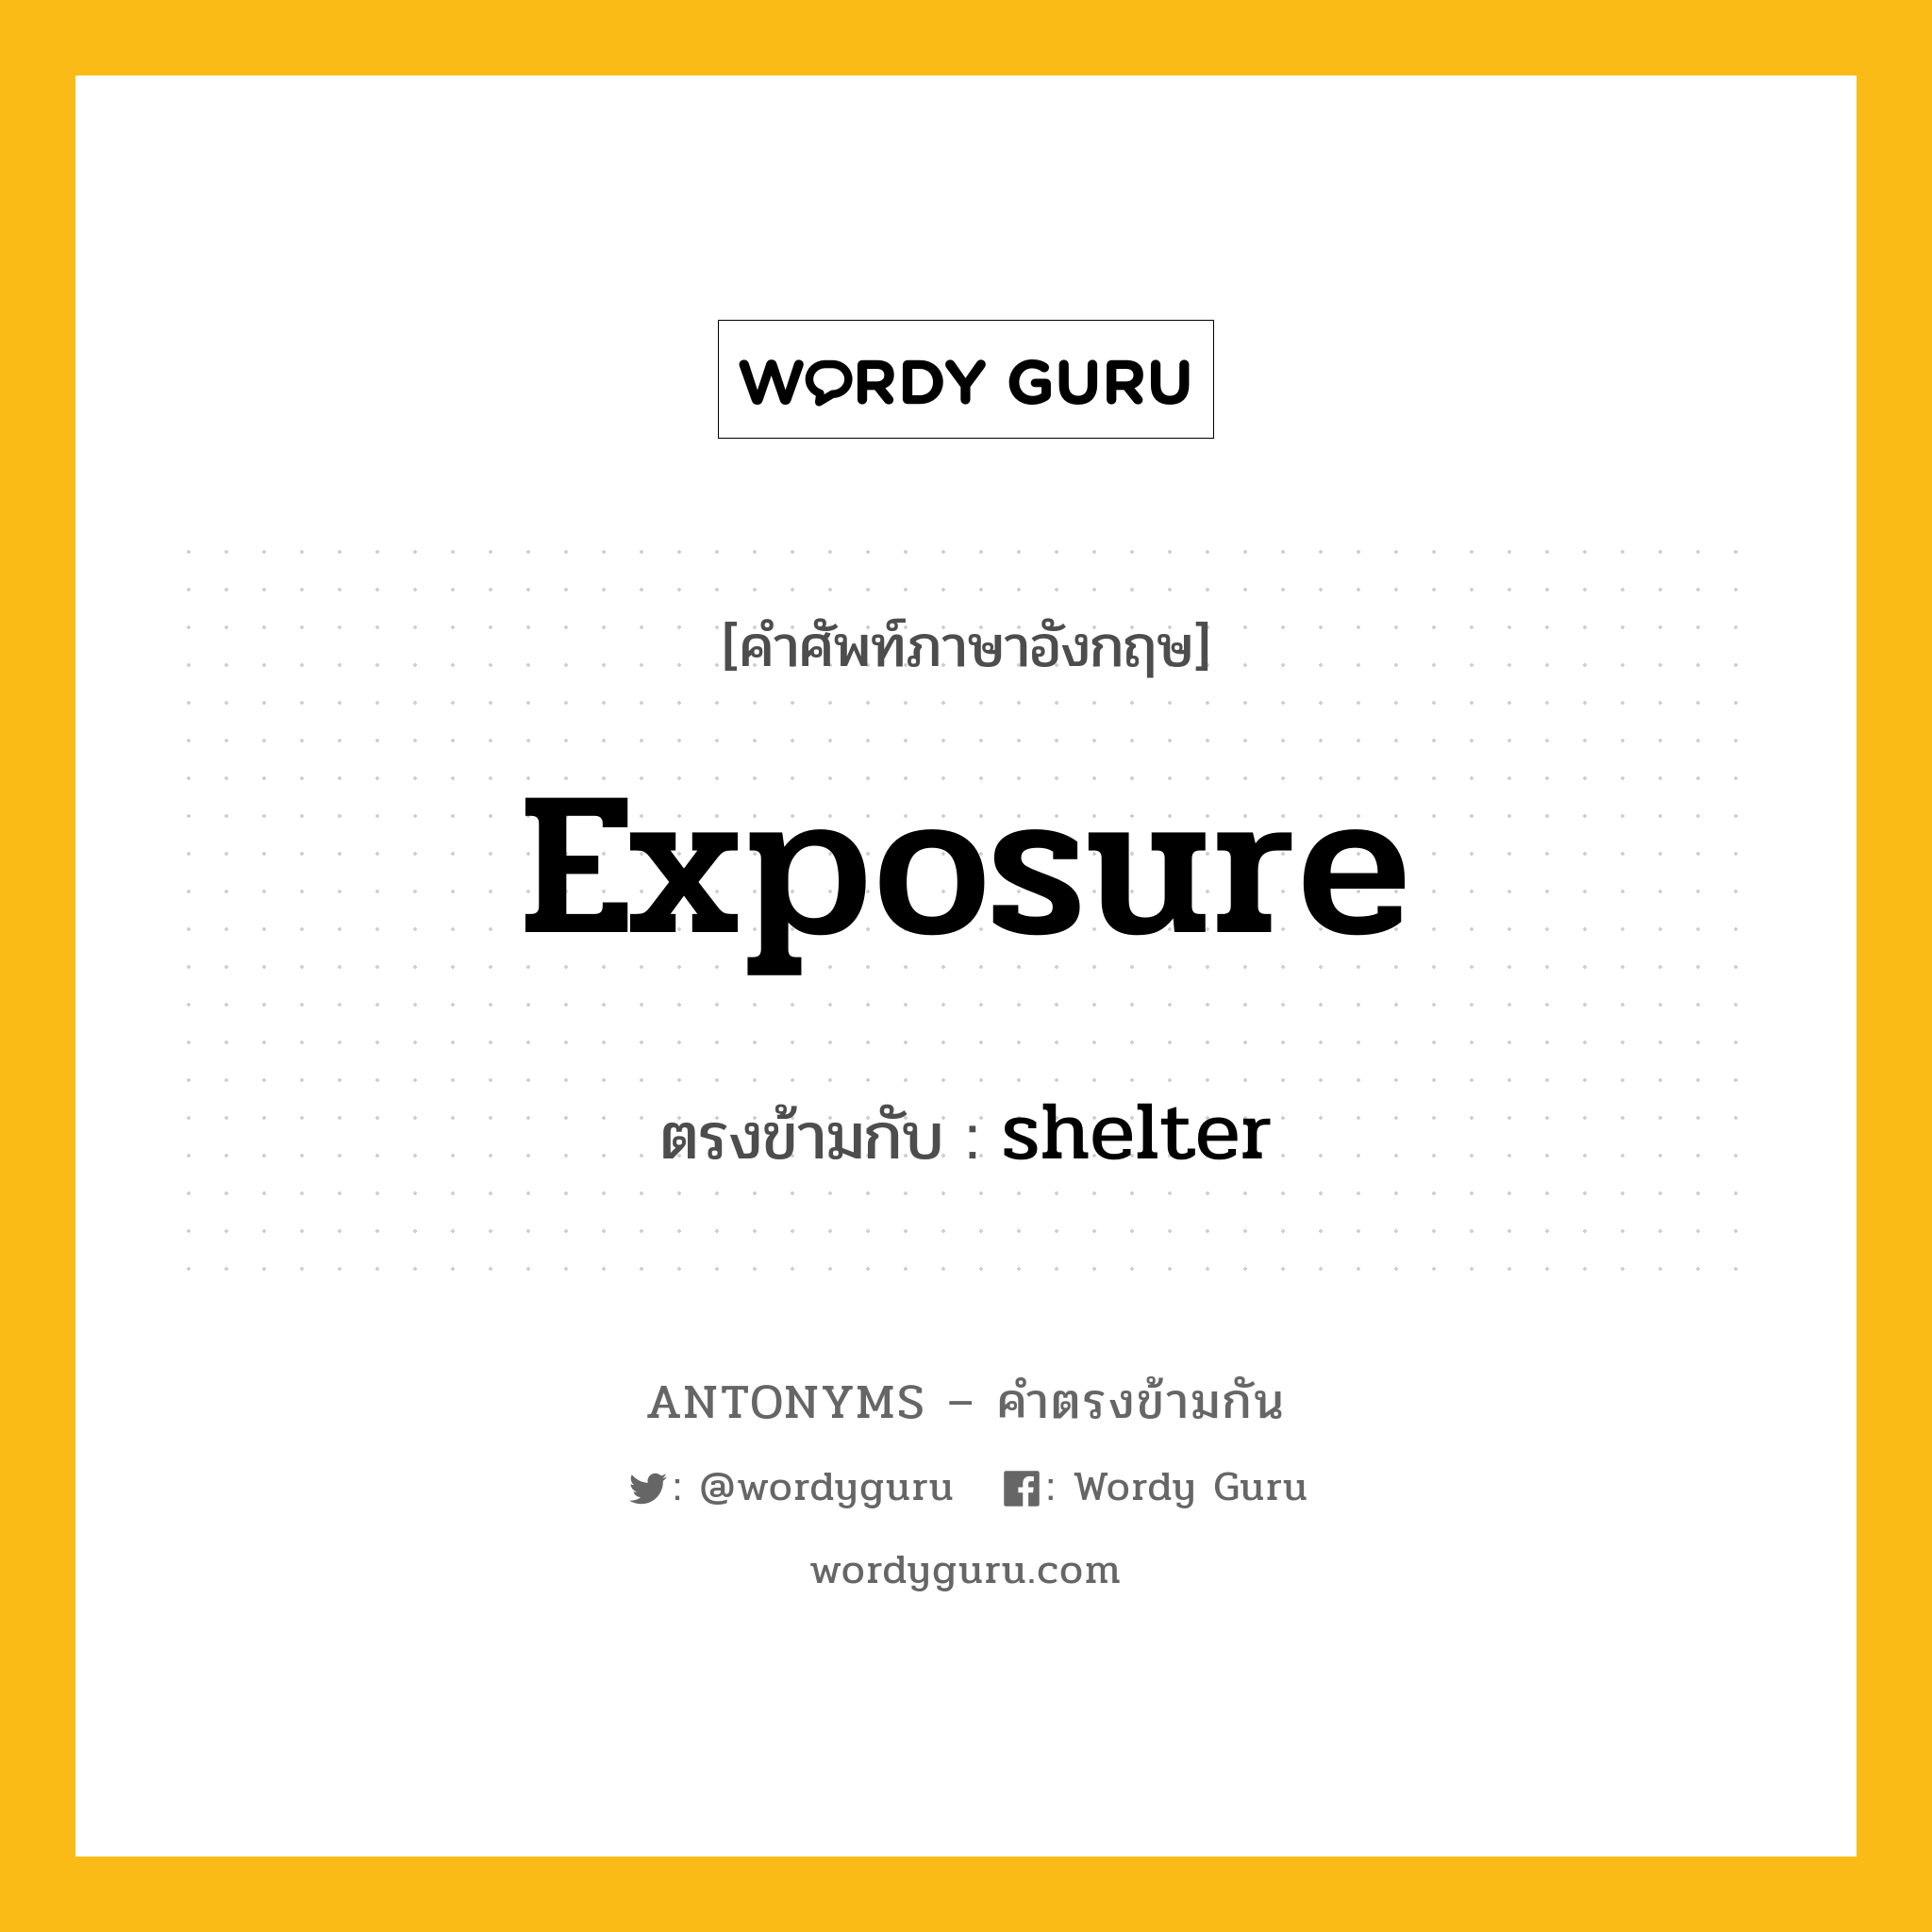 exposure เป็นคำตรงข้ามกับคำไหนบ้าง?, คำศัพท์ภาษาอังกฤษ exposure ตรงข้ามกับ shelter หมวด shelter